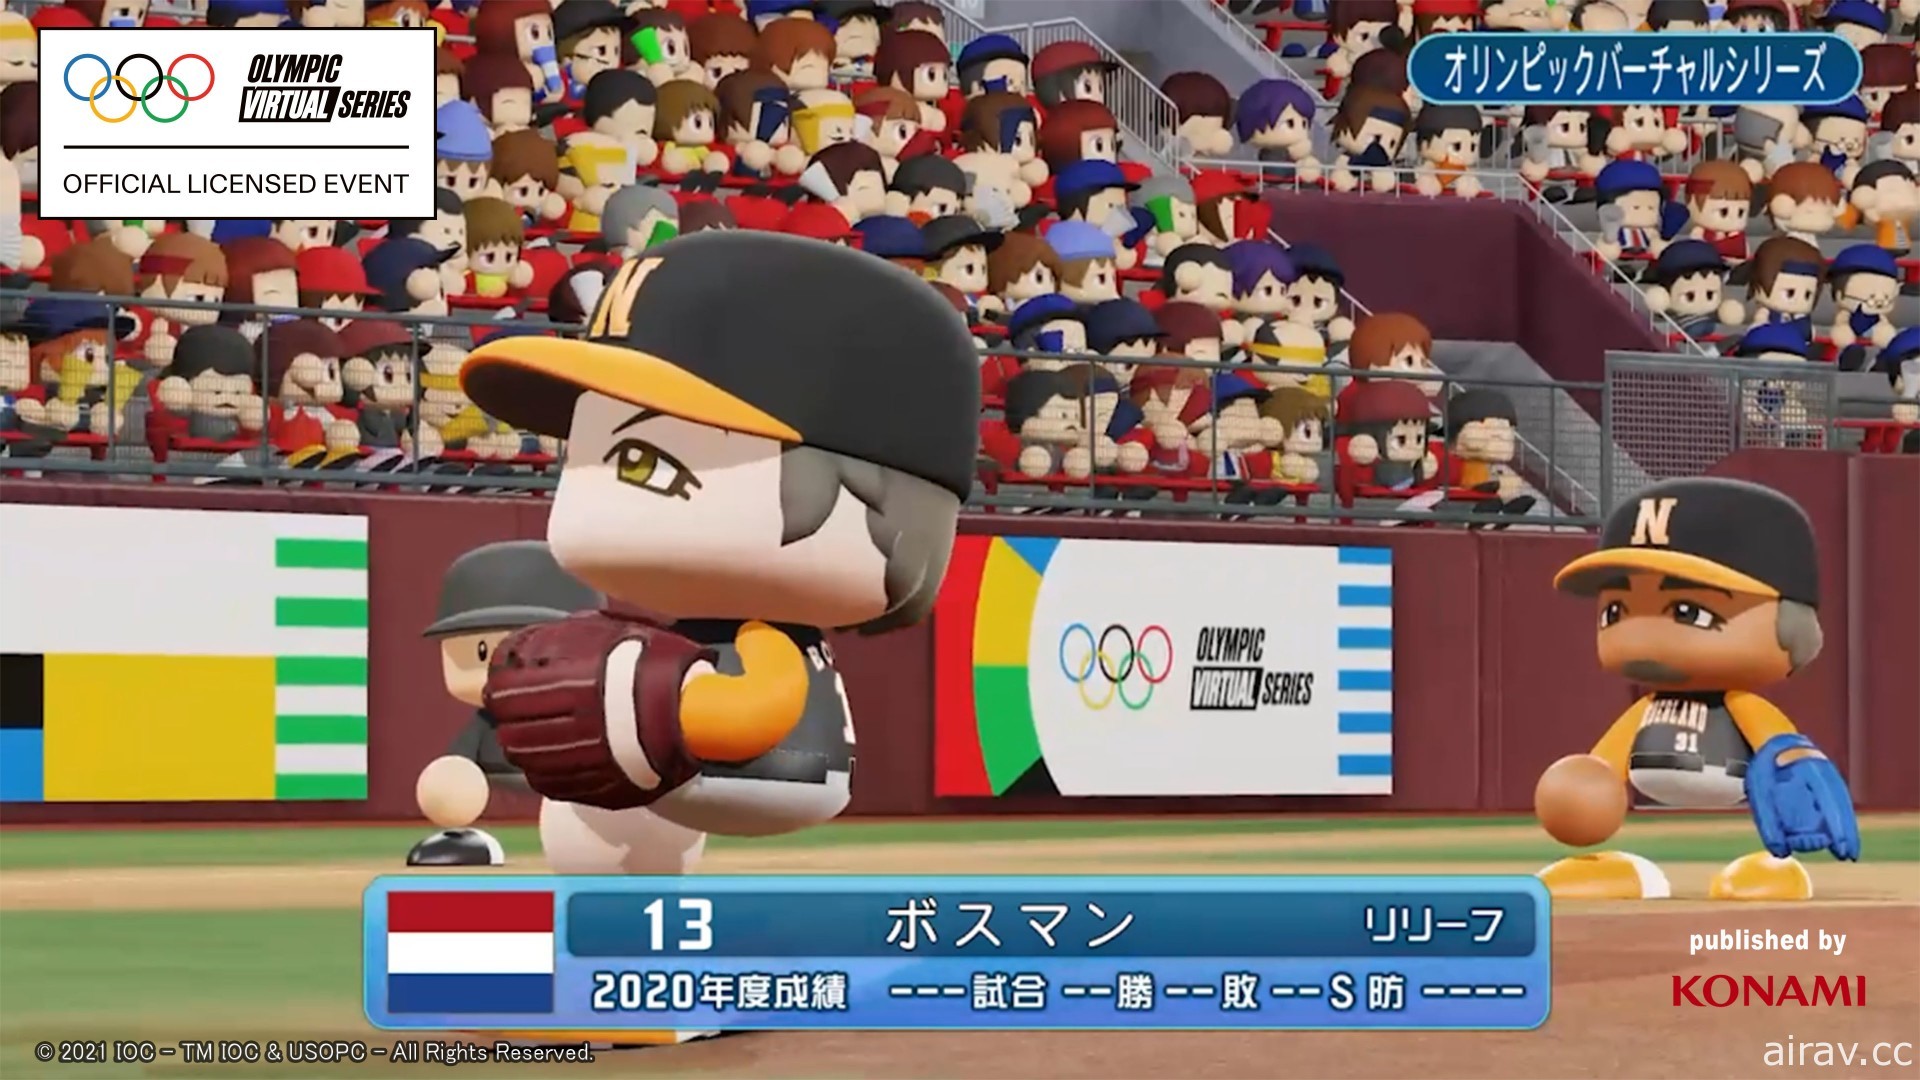 首屆奧林匹克虛擬系列賽將在《eBASEBALL 實況野球 2020》遊戱中舉行